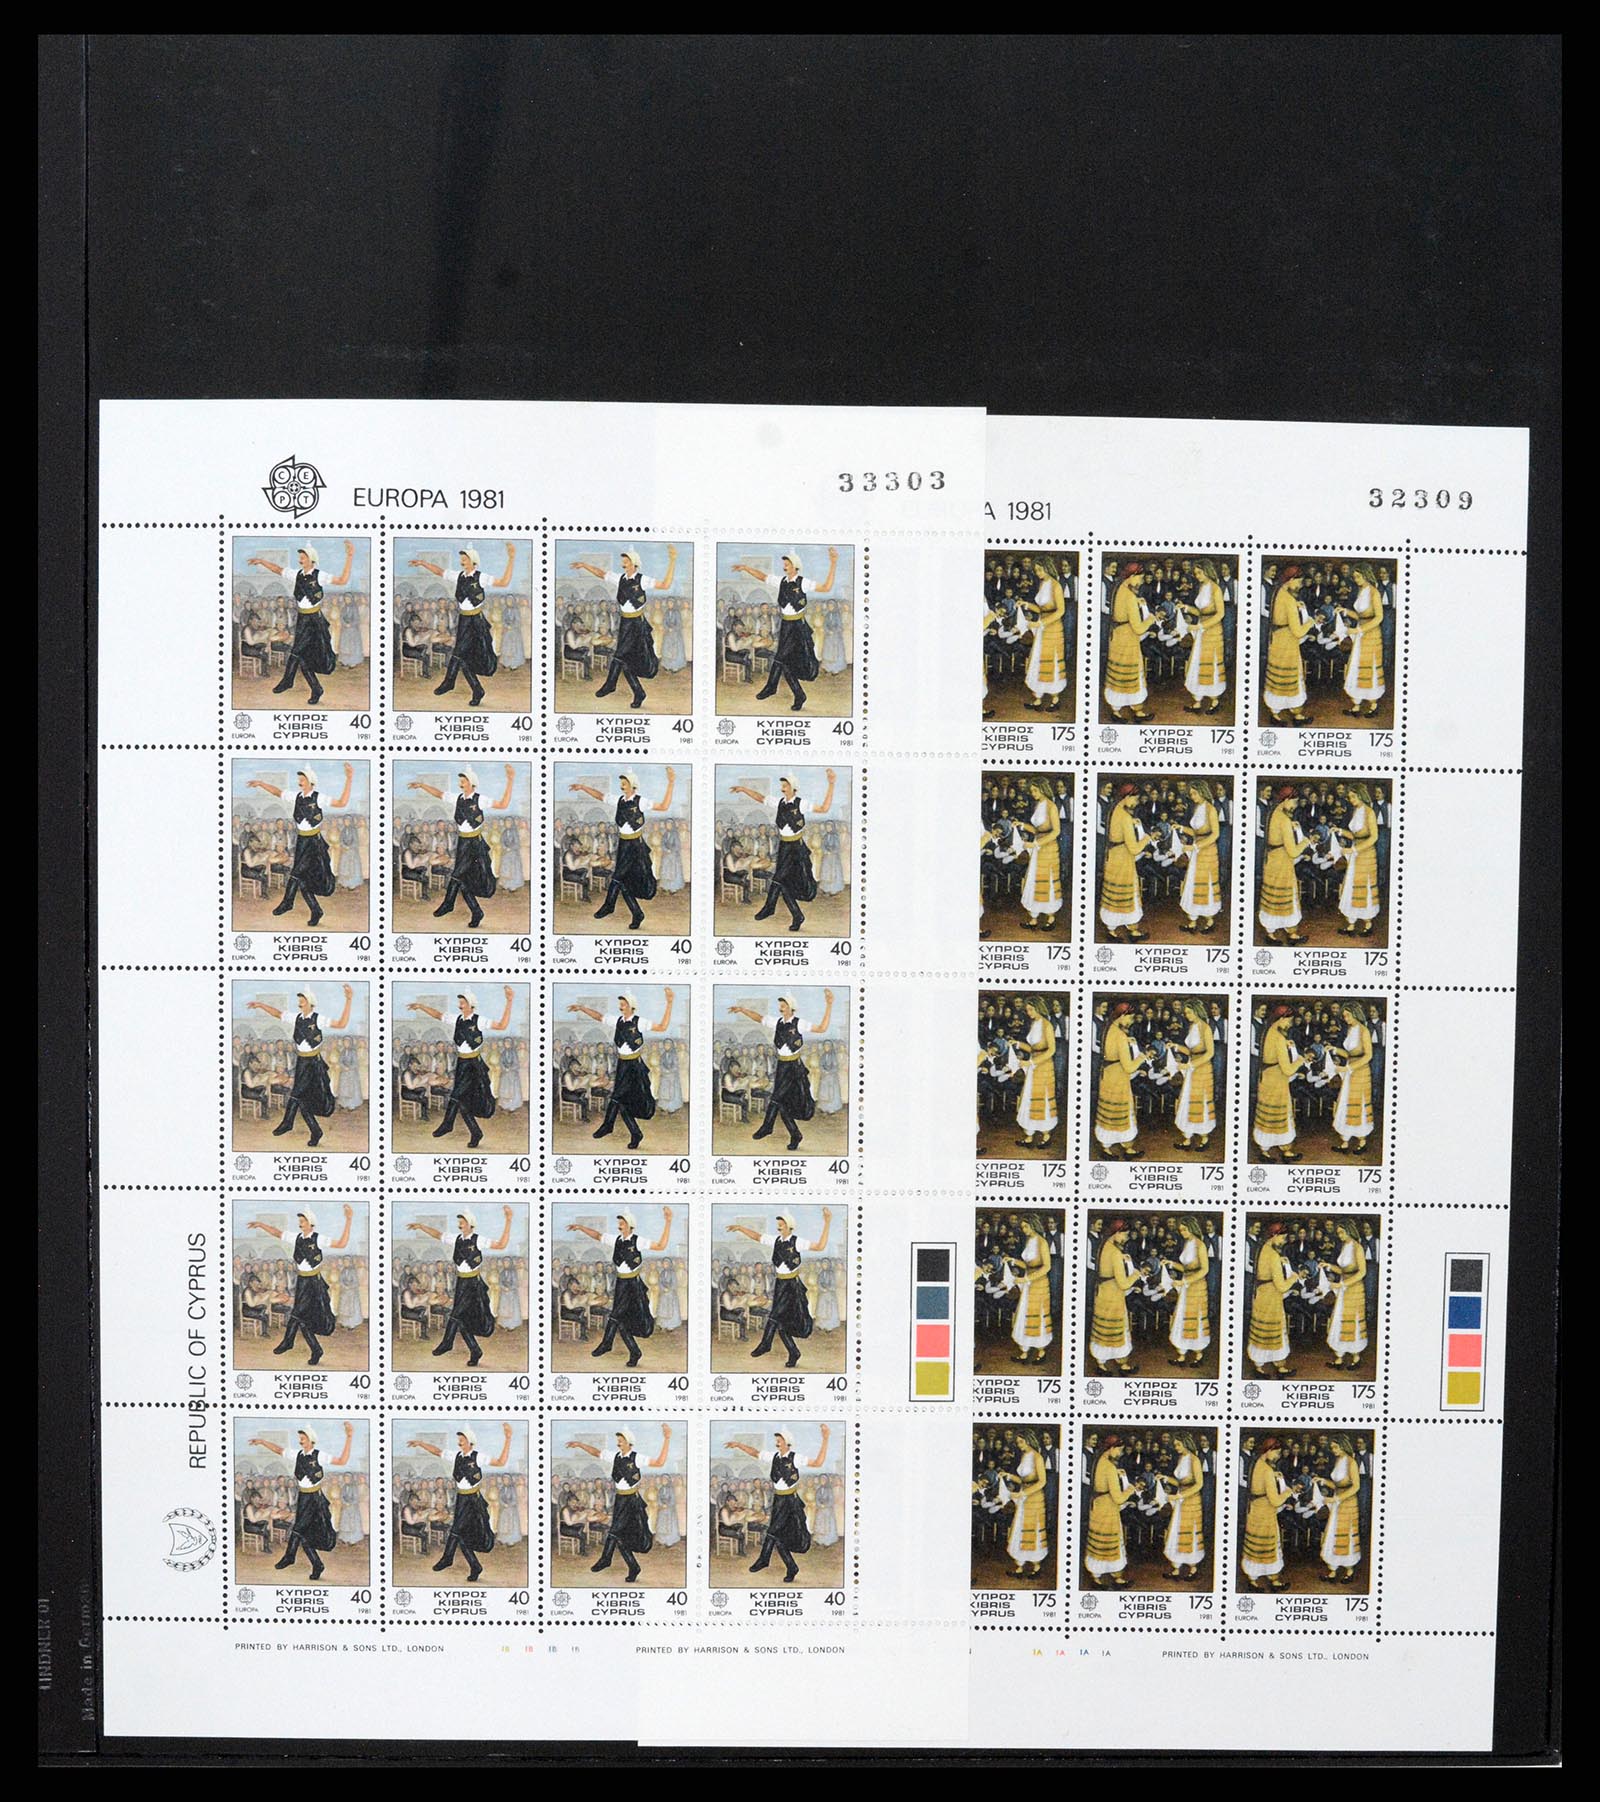 37345 020 - Stamp collection 37345 European countries souvenir sheets.